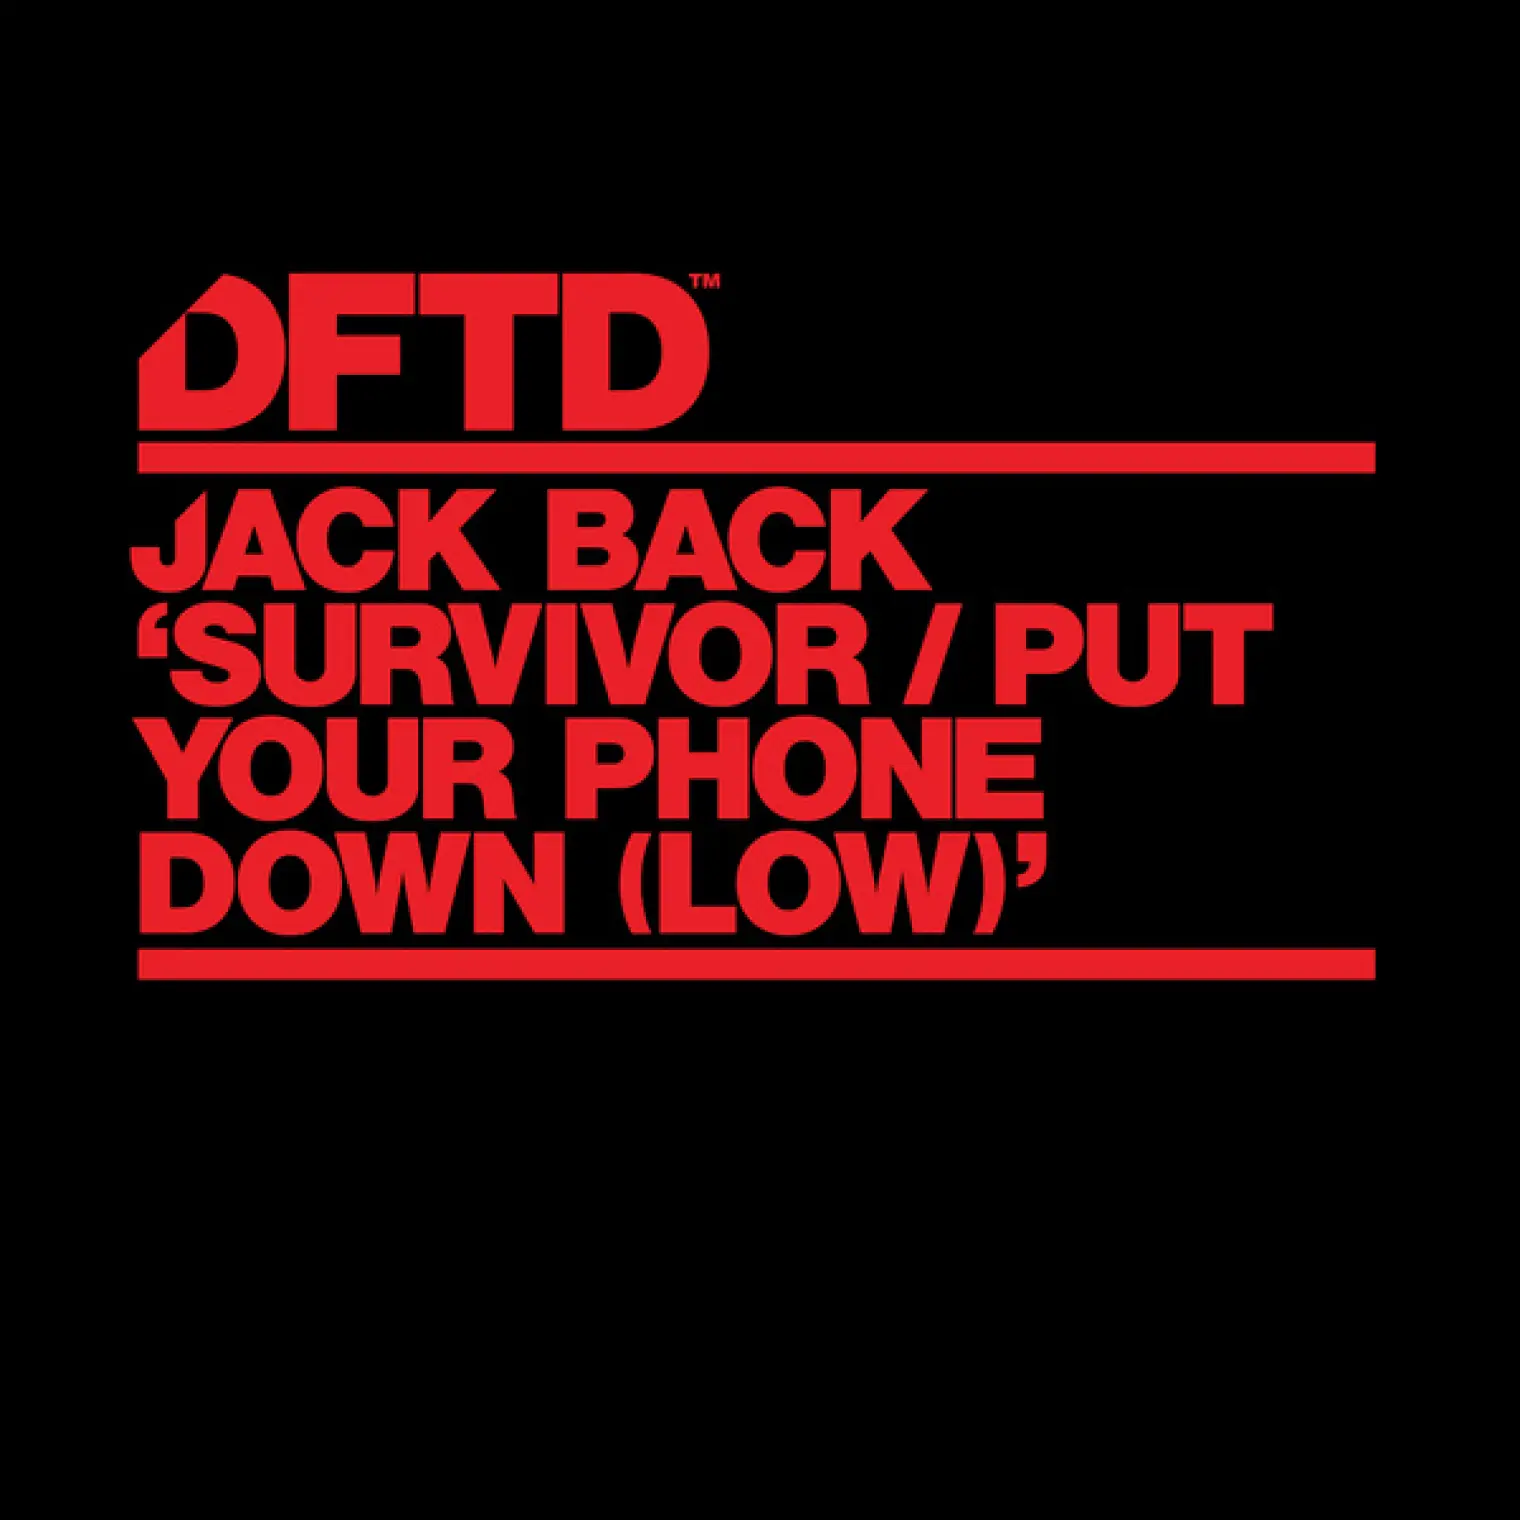 Survivor / Put Your Phone Down (Low) -  Jack Back 